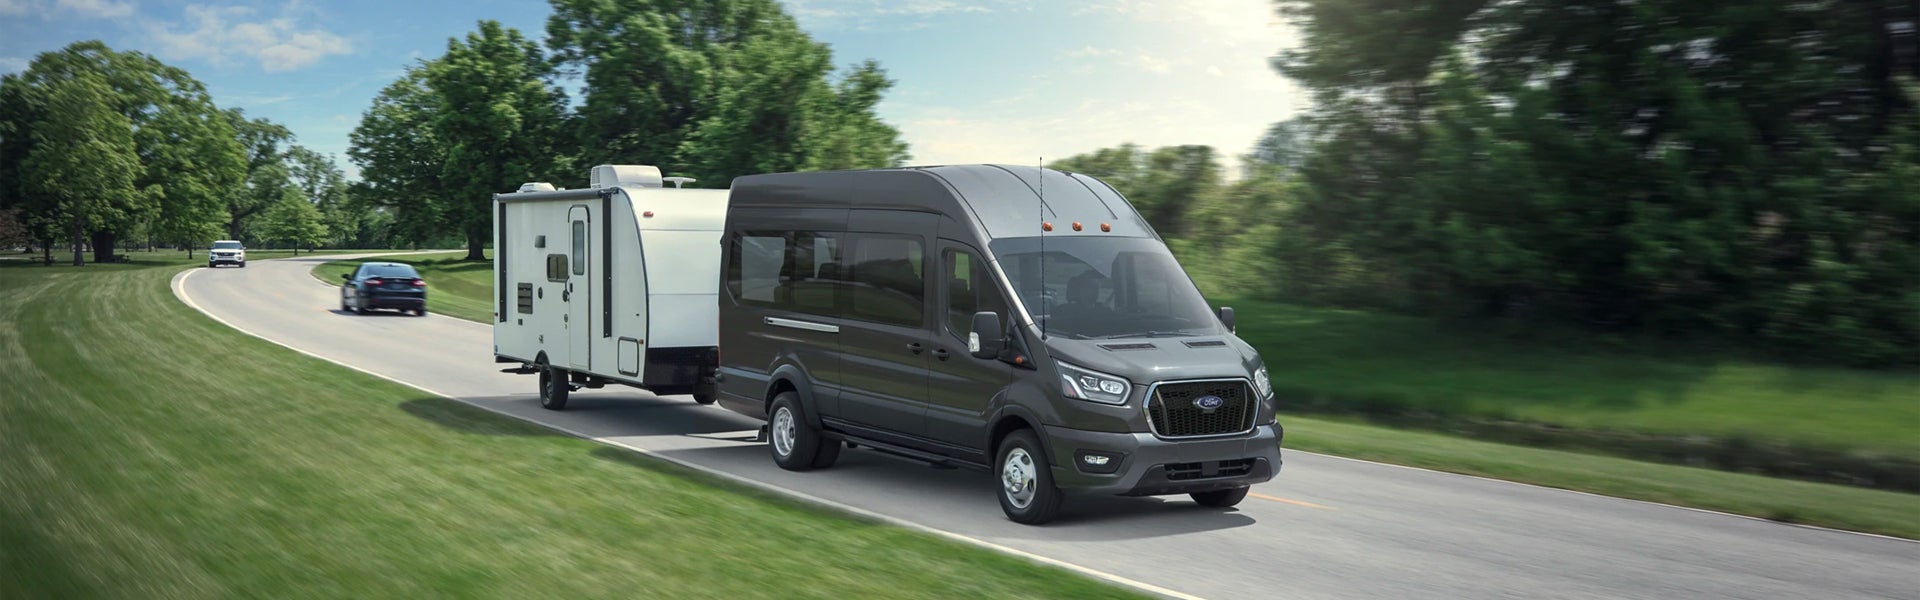 A Ford Transit Van hauls a camper.